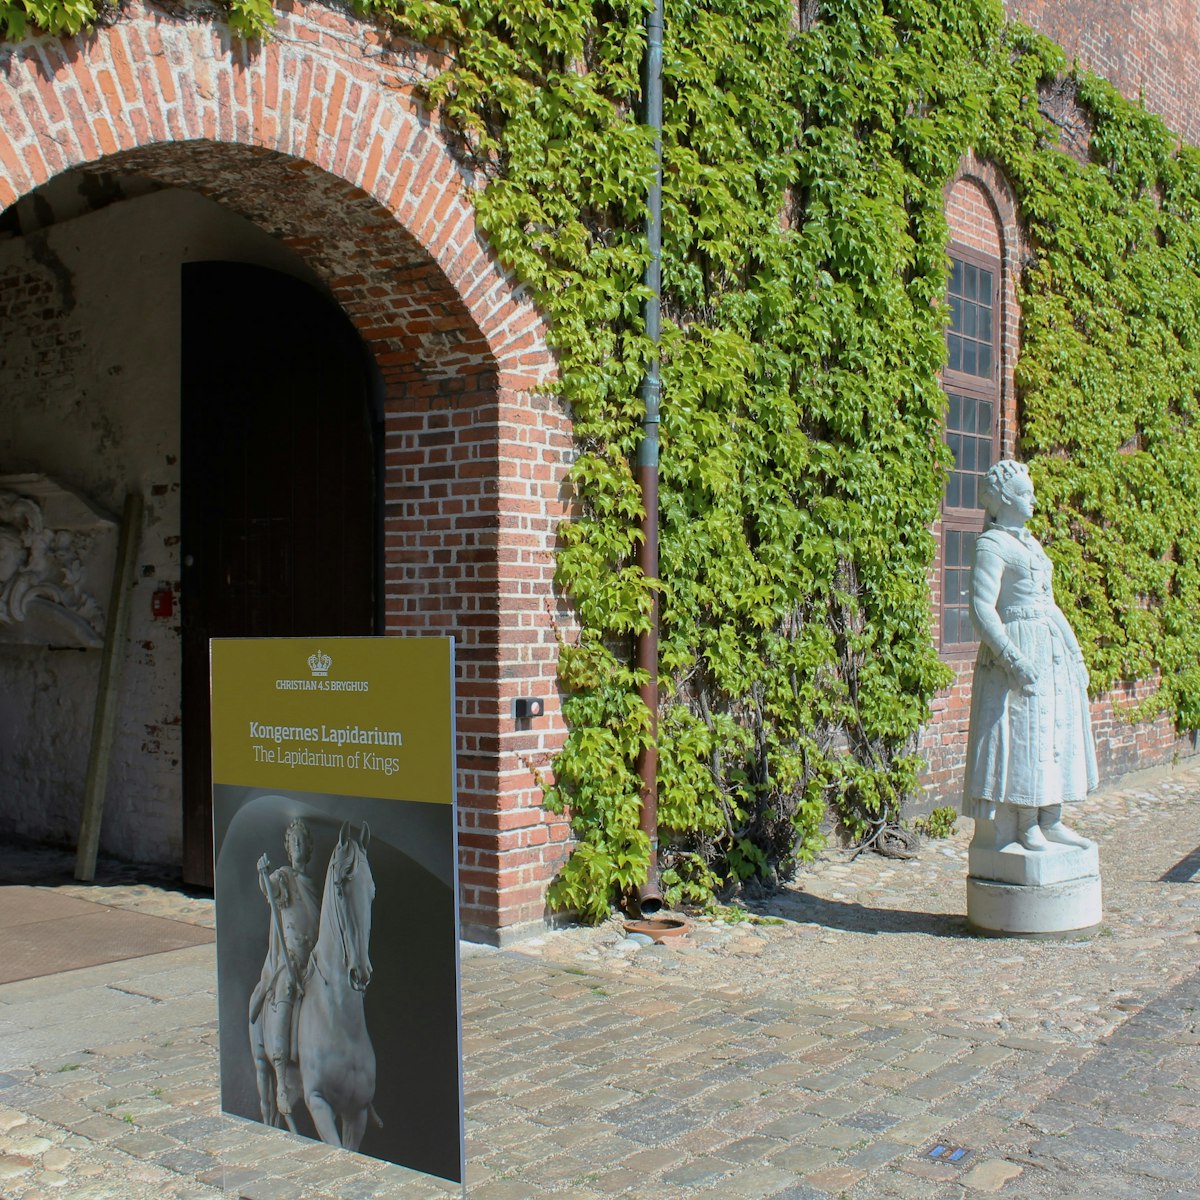 tourist attractions in copenhagen